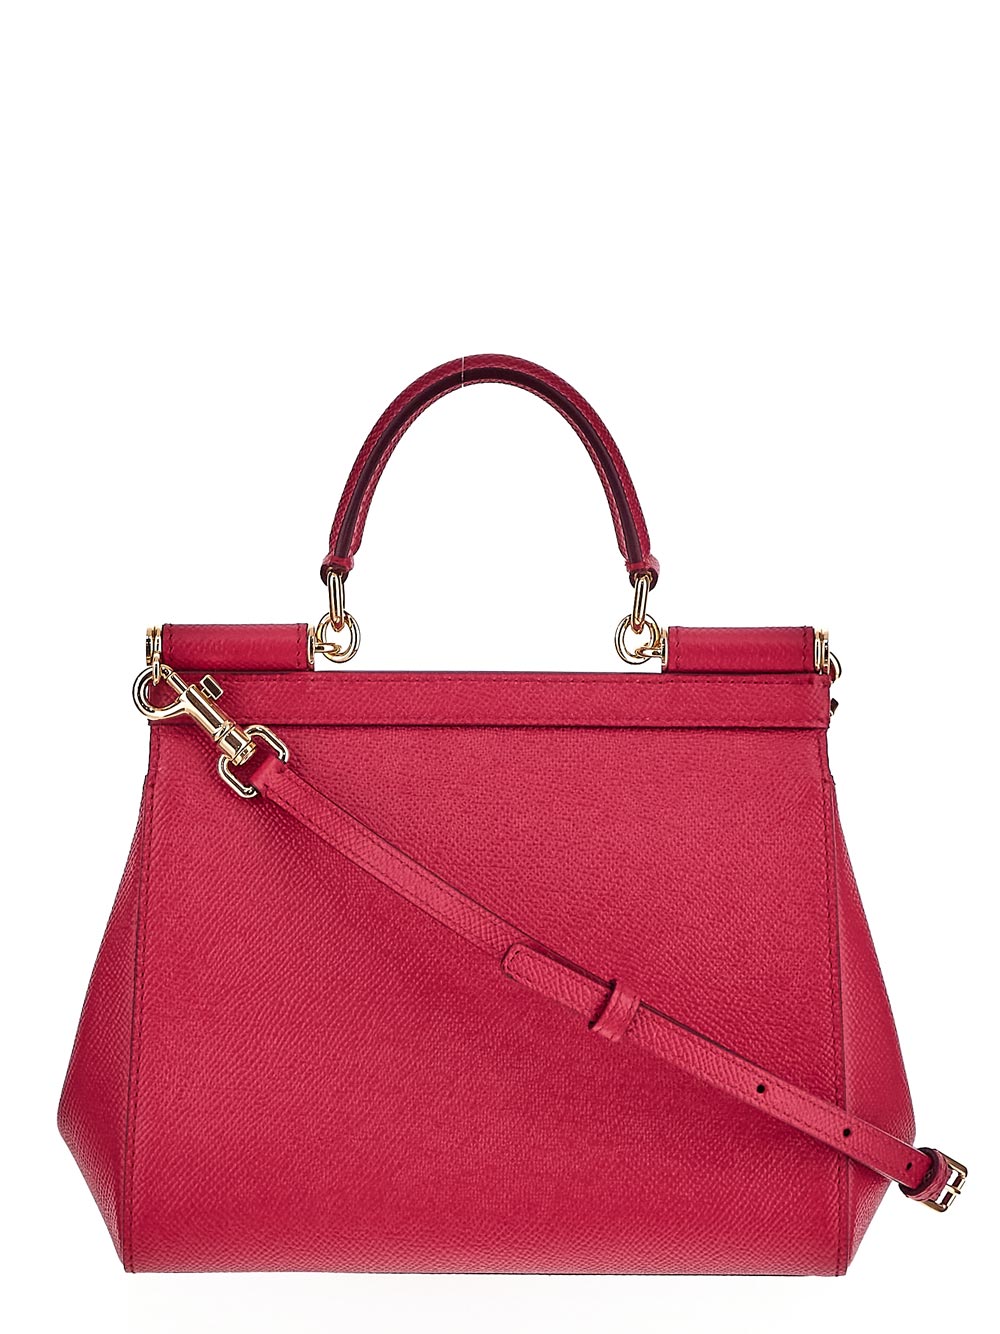 Dolce & Gabbana Medium Sicily Handbag